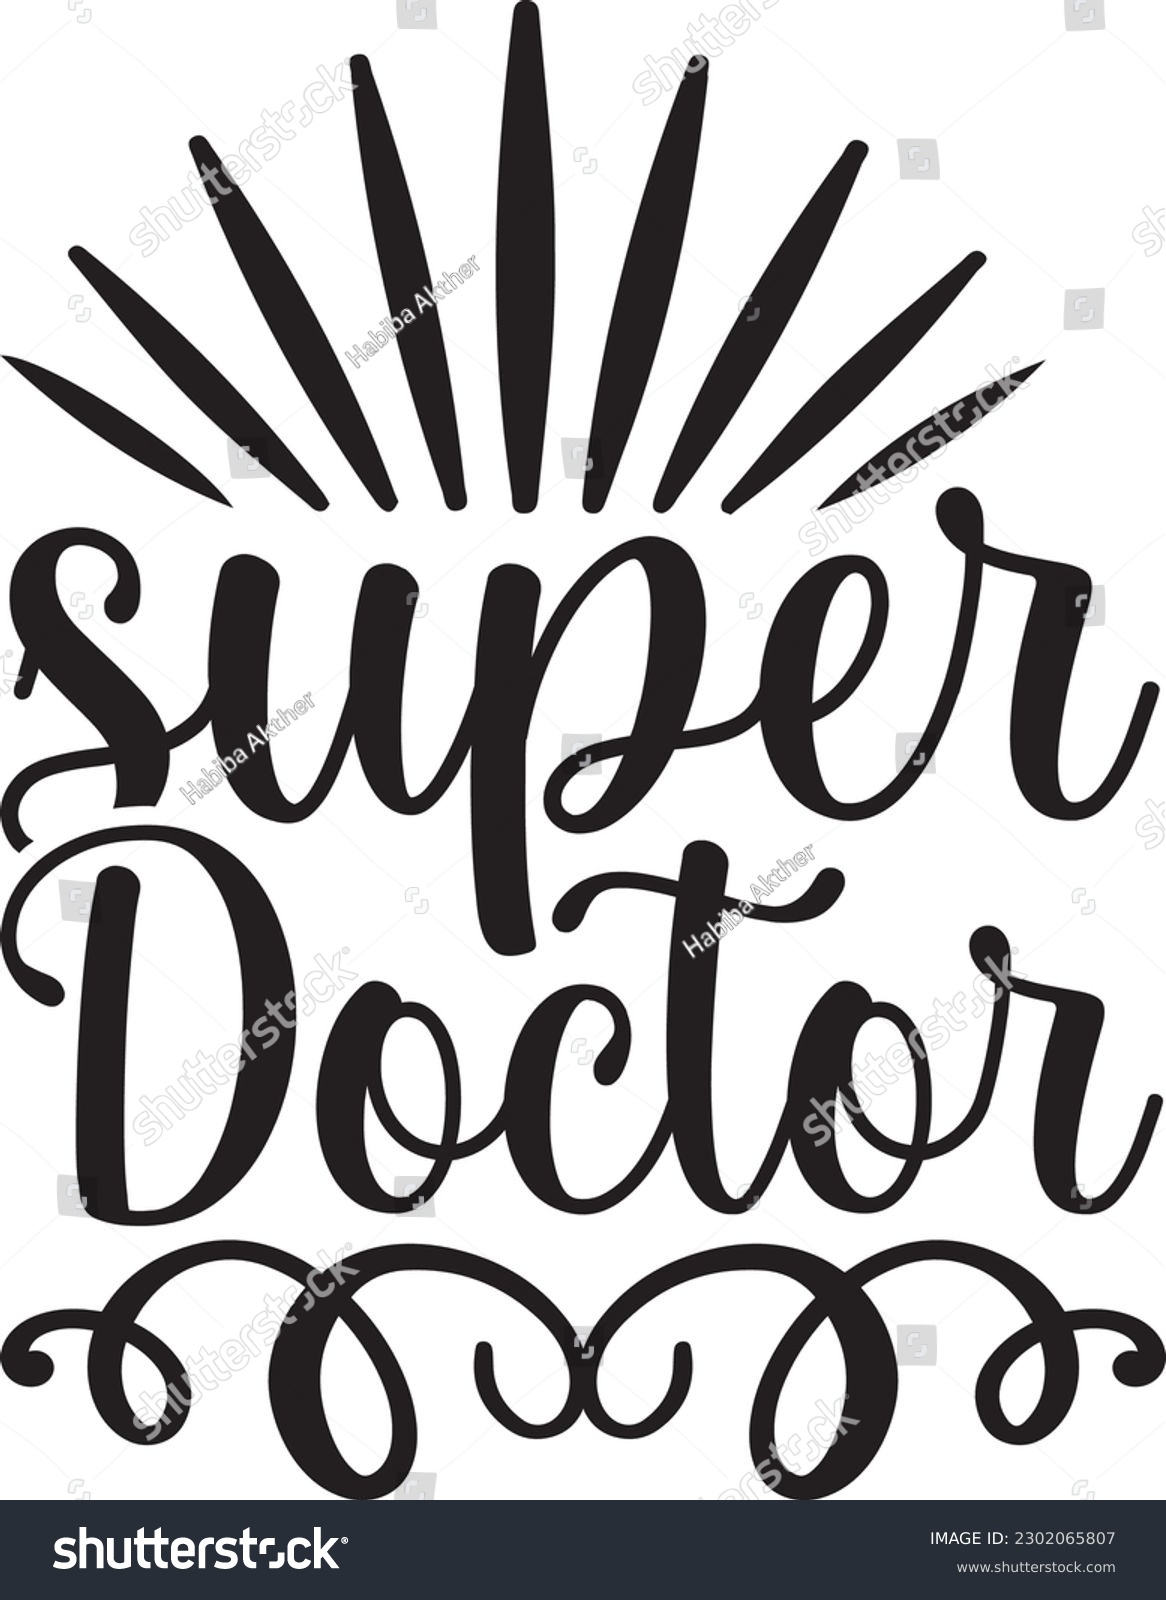 SVG of super doctor,Doctor's Day,#1 doctor,Doctor Svg,silhouette,Vector,Nurse SVG,Essential Worker,Hospital,Heart Stethoscope SVG,dentist svg,monogram svg,medical,Eps,uniform svg,Doctor Jacket svg,Doctor mug svg